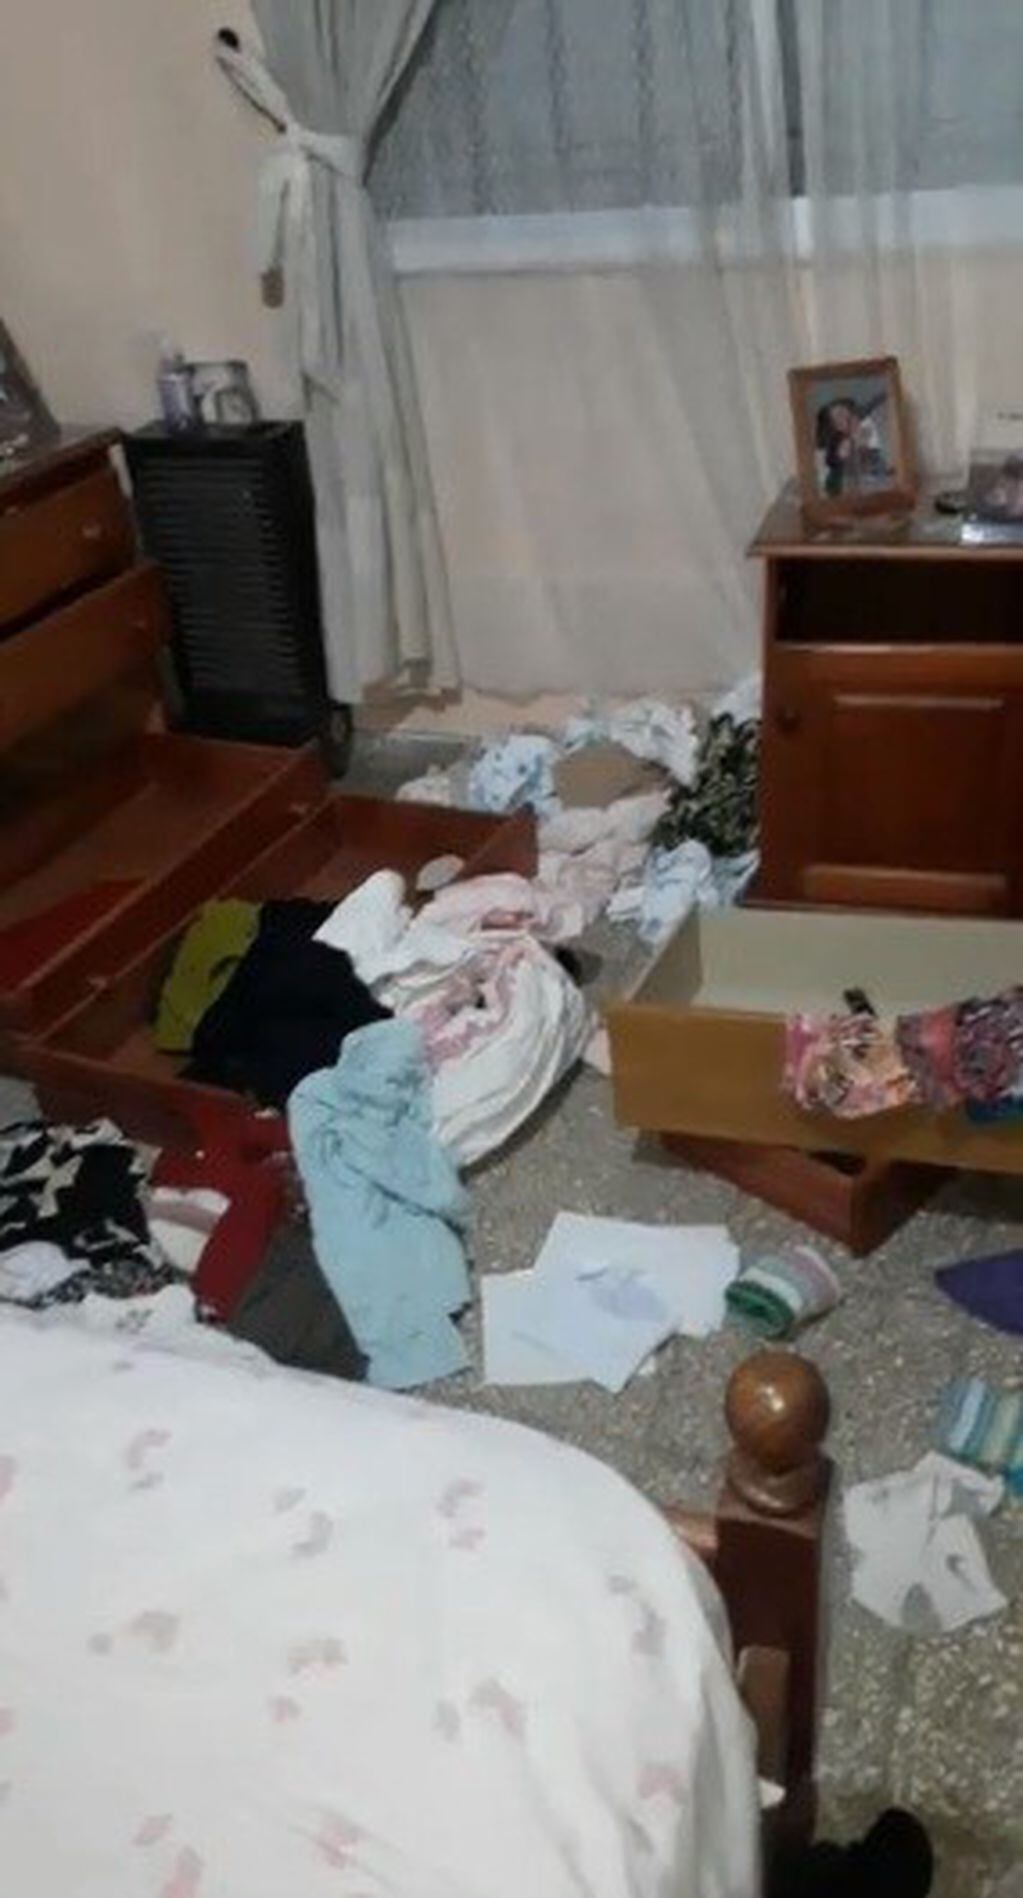 Así quedó el dormitorio tras el robo. (Flash 24)